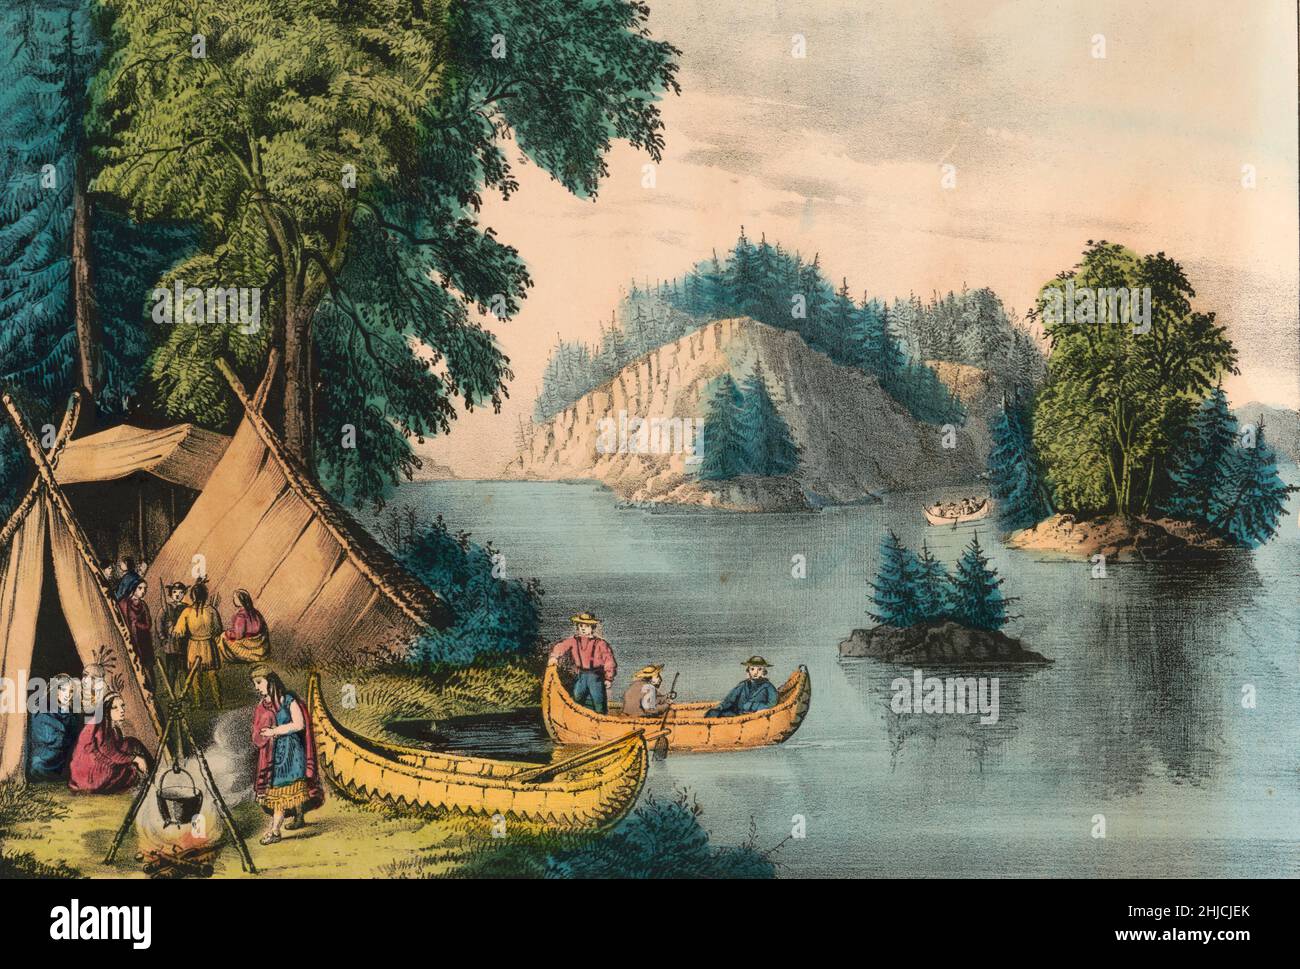 Un campement indien sur le fleuve Saint-Laurent.Lithographie de couleur main publiée par Currier & Ives entre 1856 et 1907. Banque D'Images